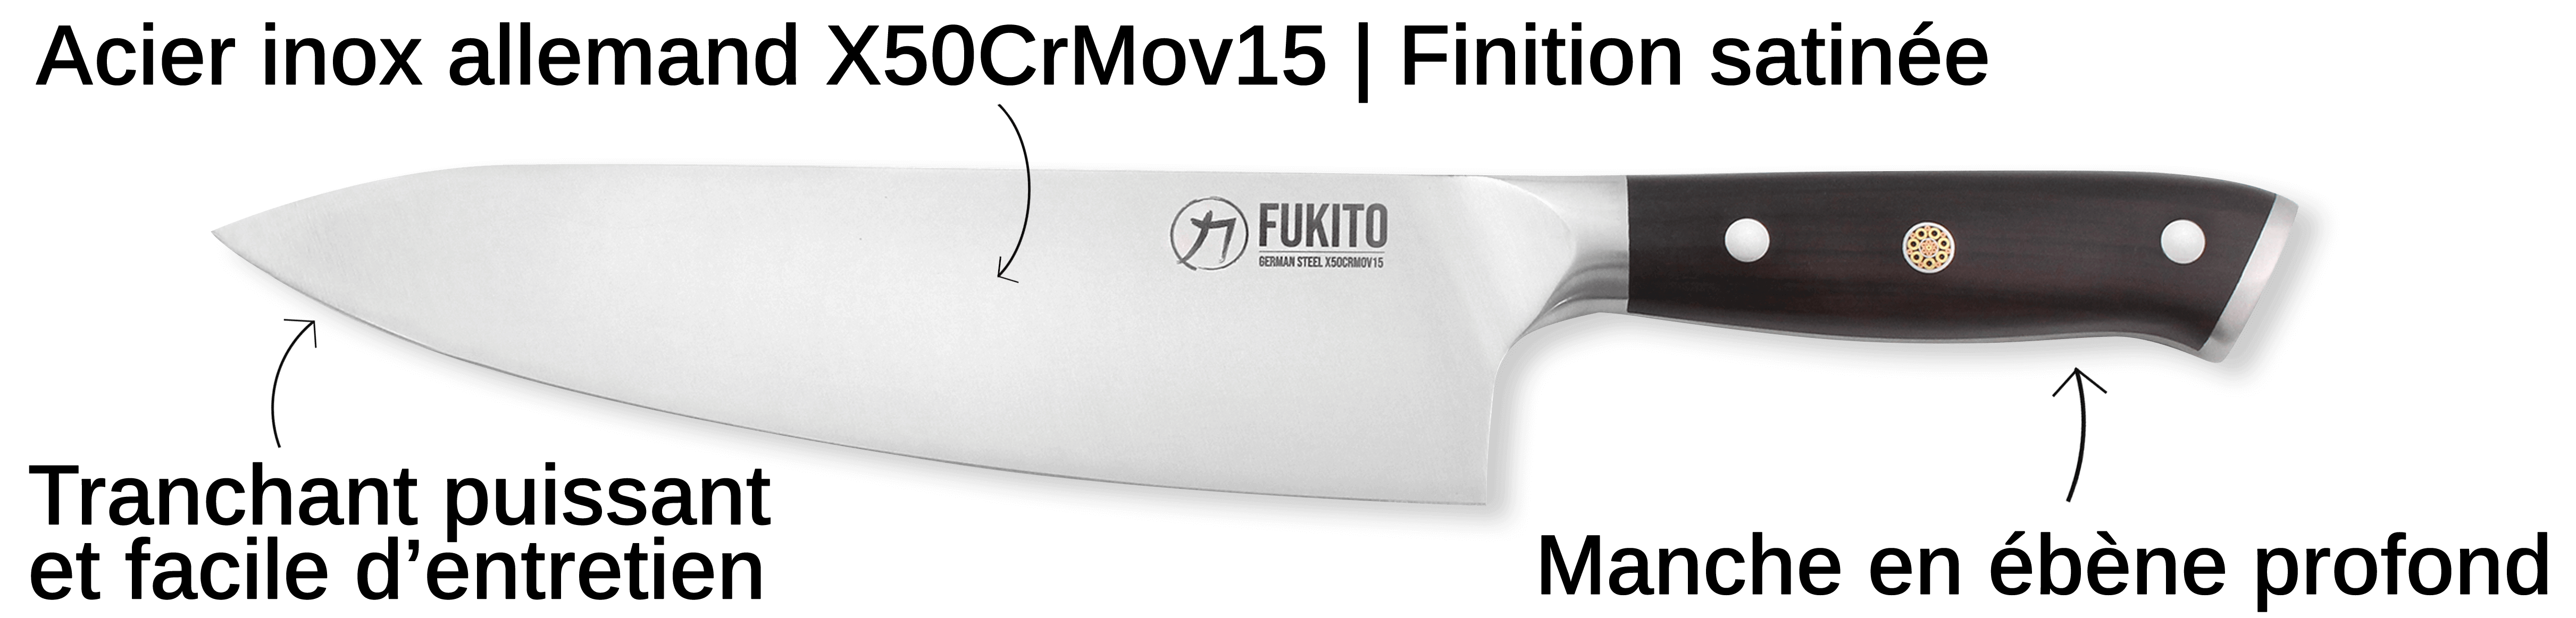 Découvrez le couteau Fukito Ebène X50 ici